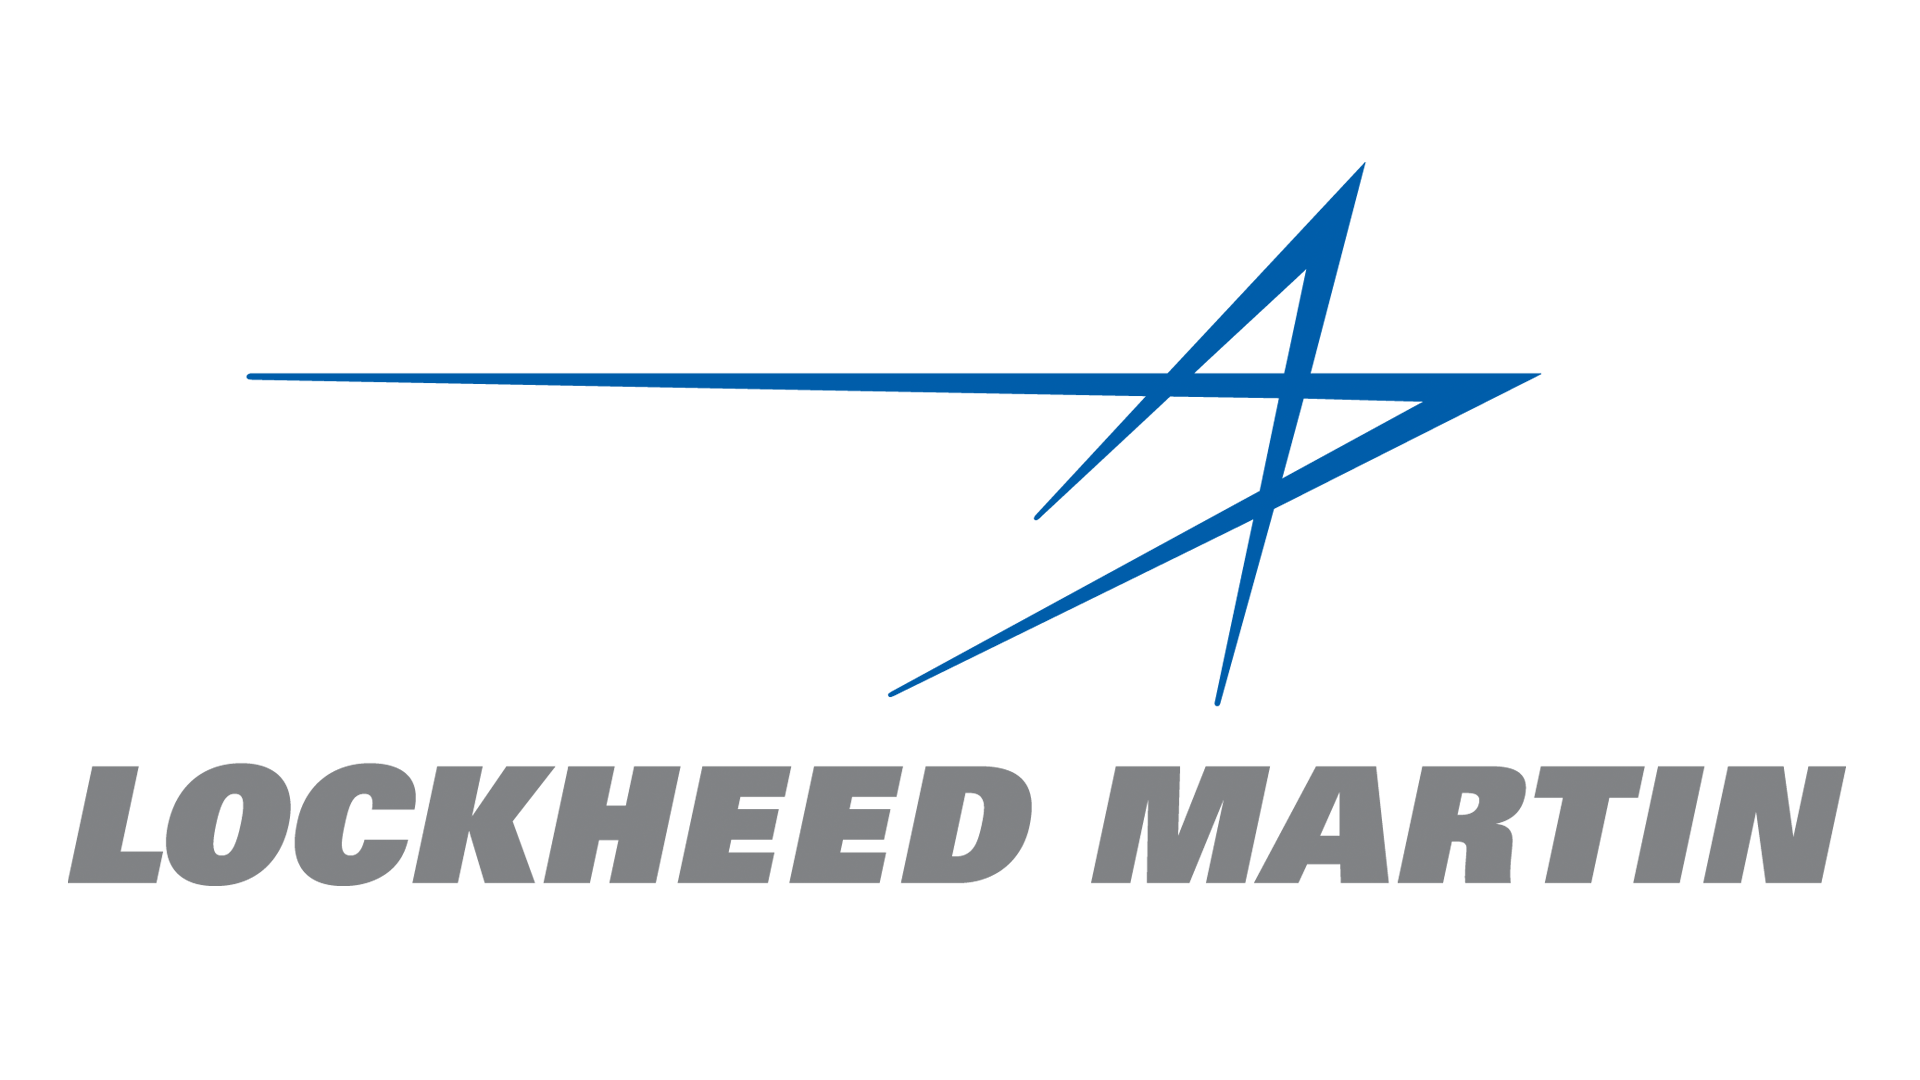 Lockheed Martin Star Logo - Image - Lockheed-martin-logo.png | Logopedia | FANDOM powered by Wikia